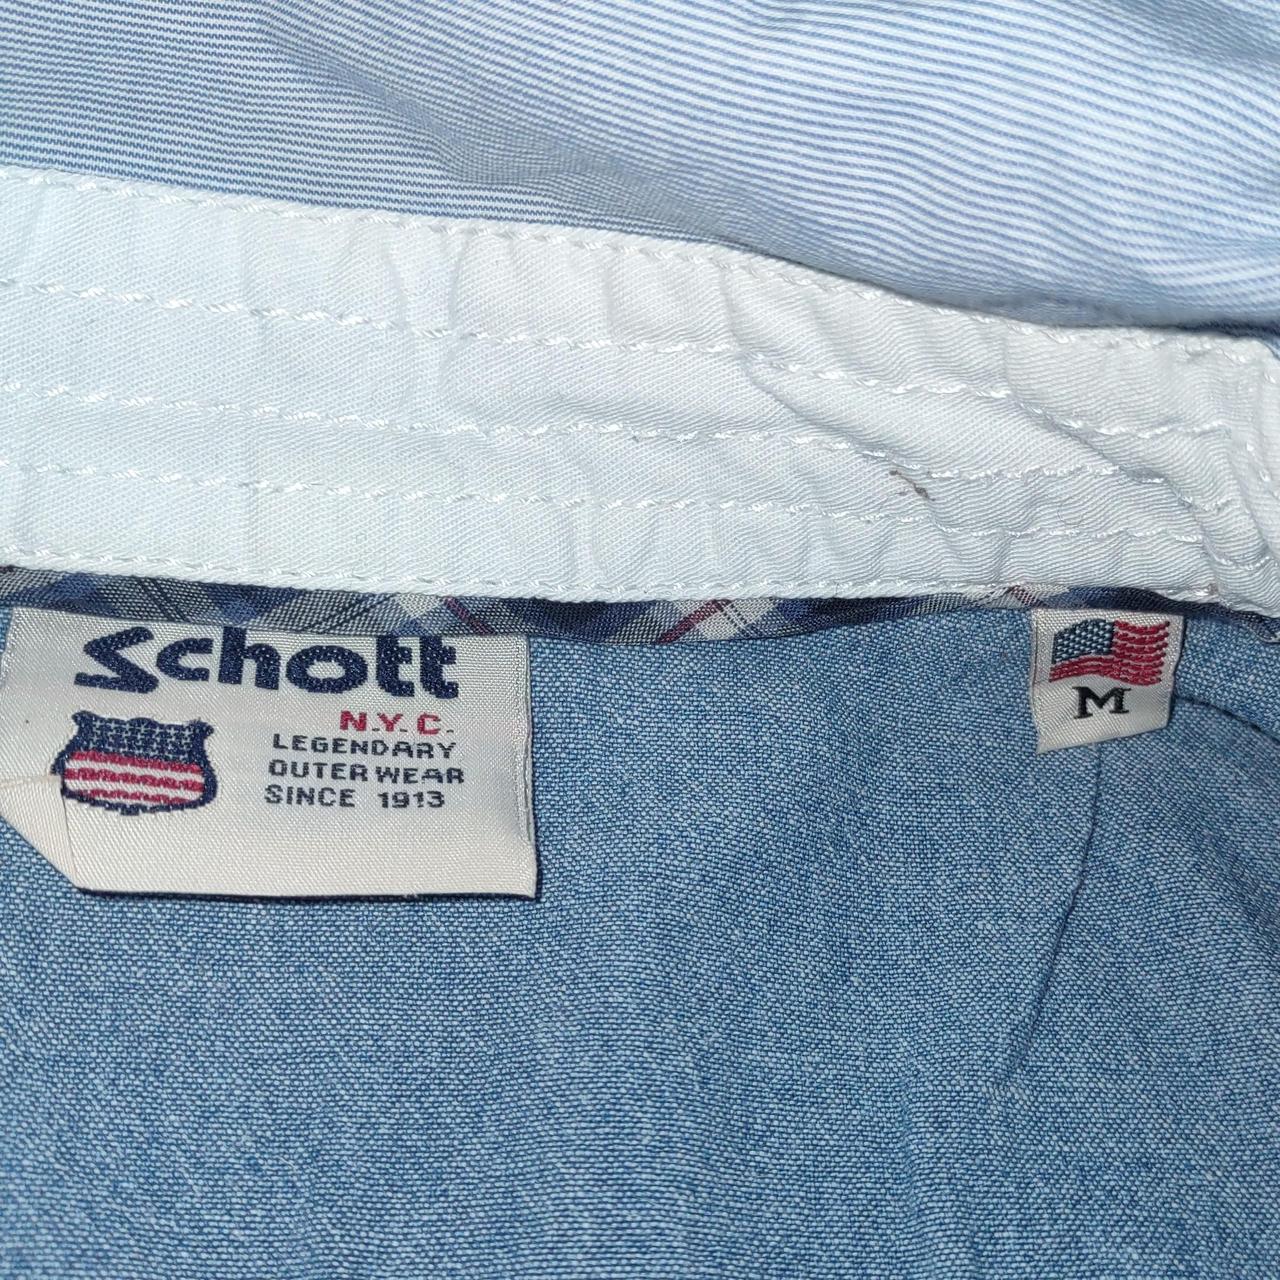 Schott Men's Blue and Red Shirt (2)